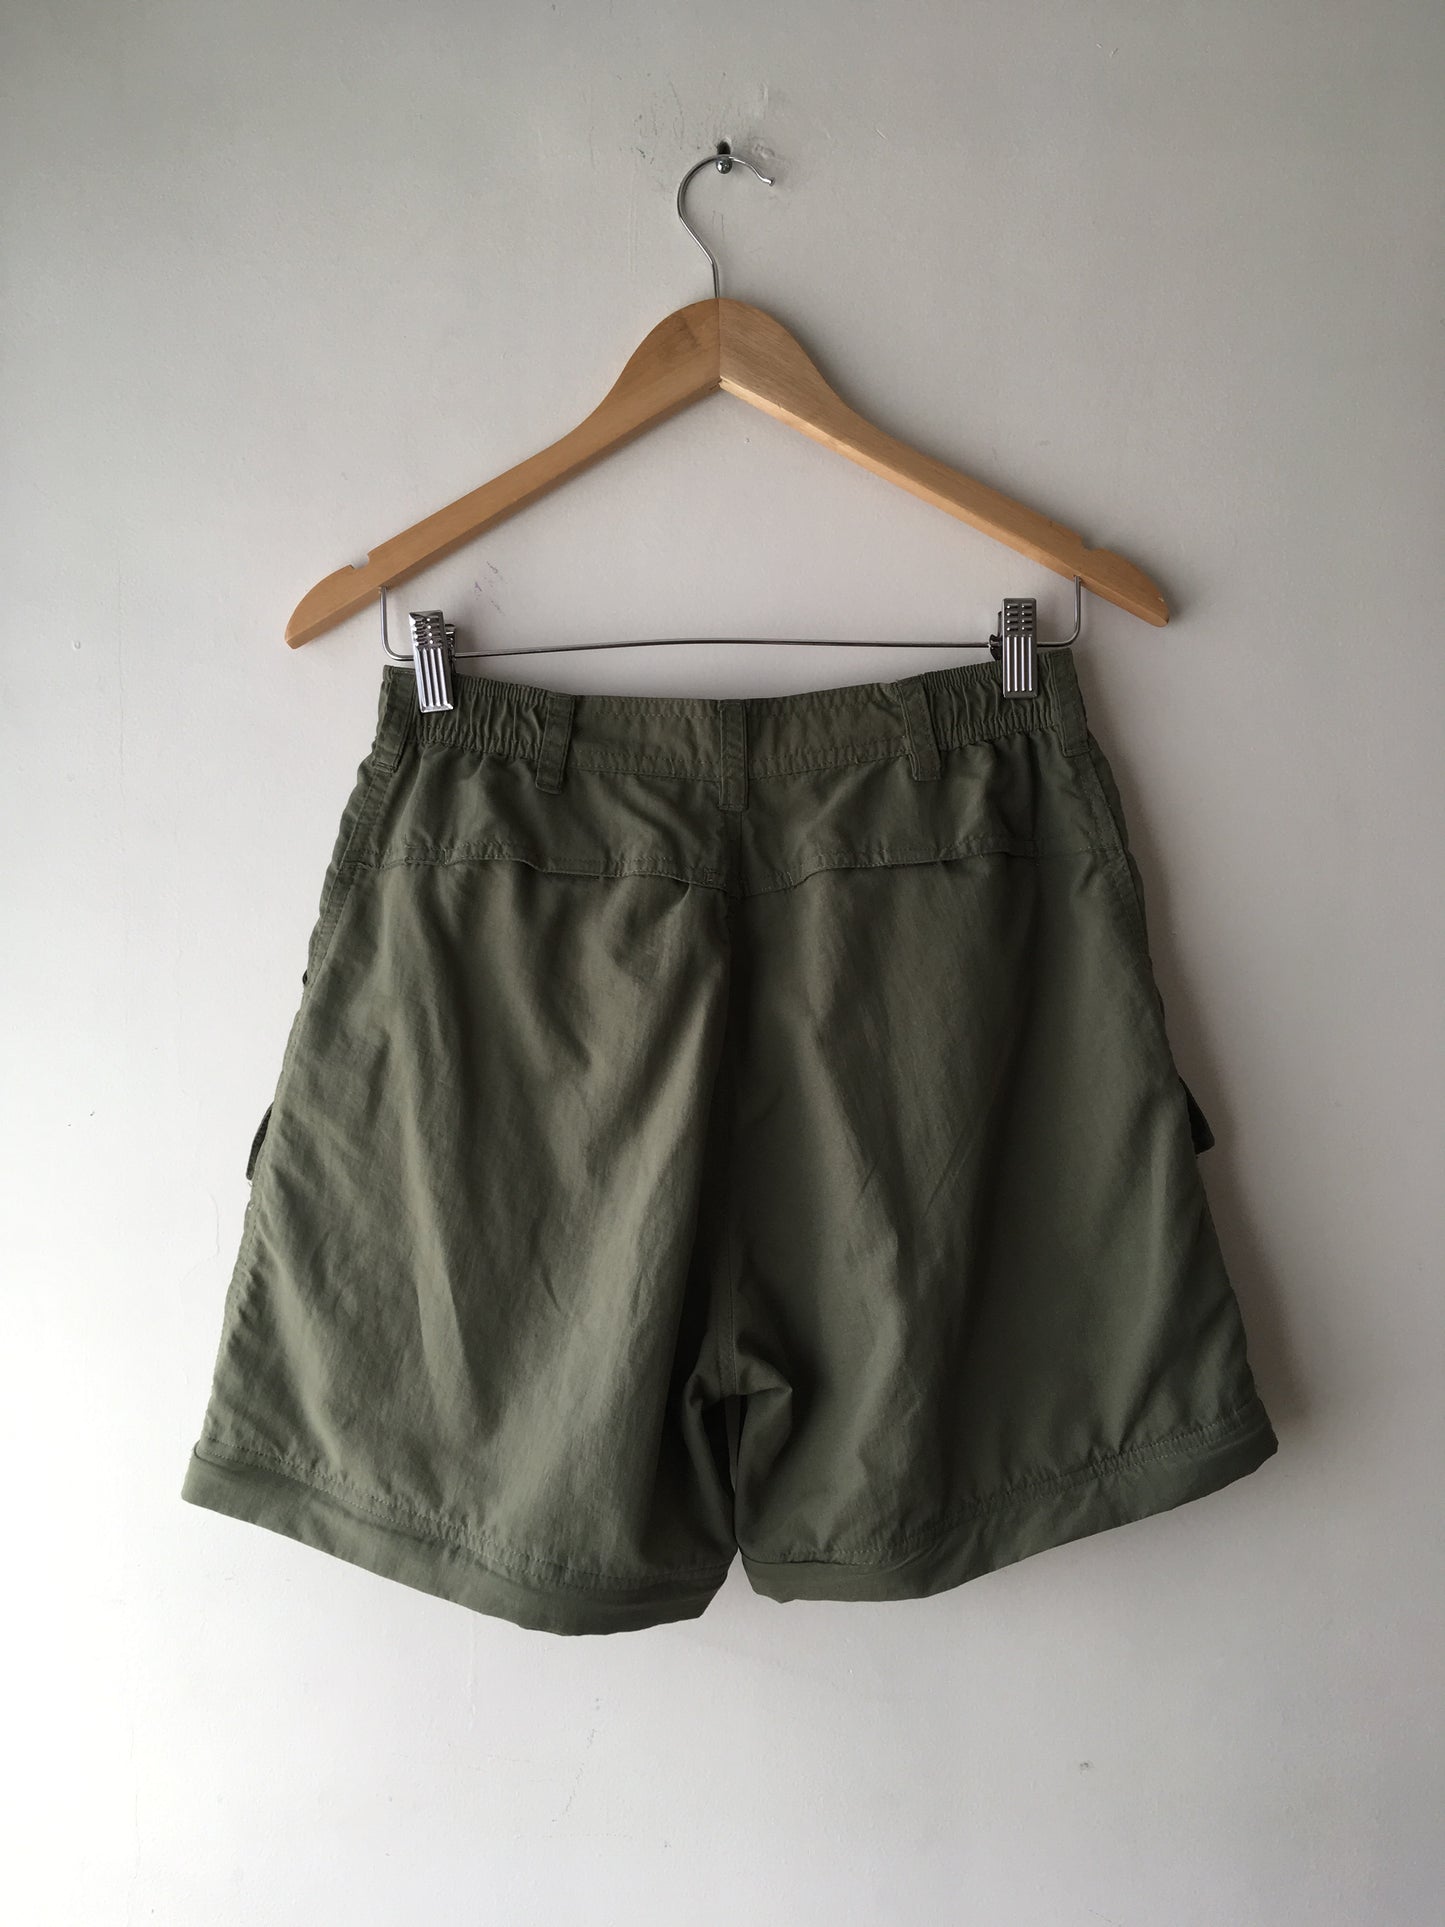 Olive Cargo Pants/Shorts